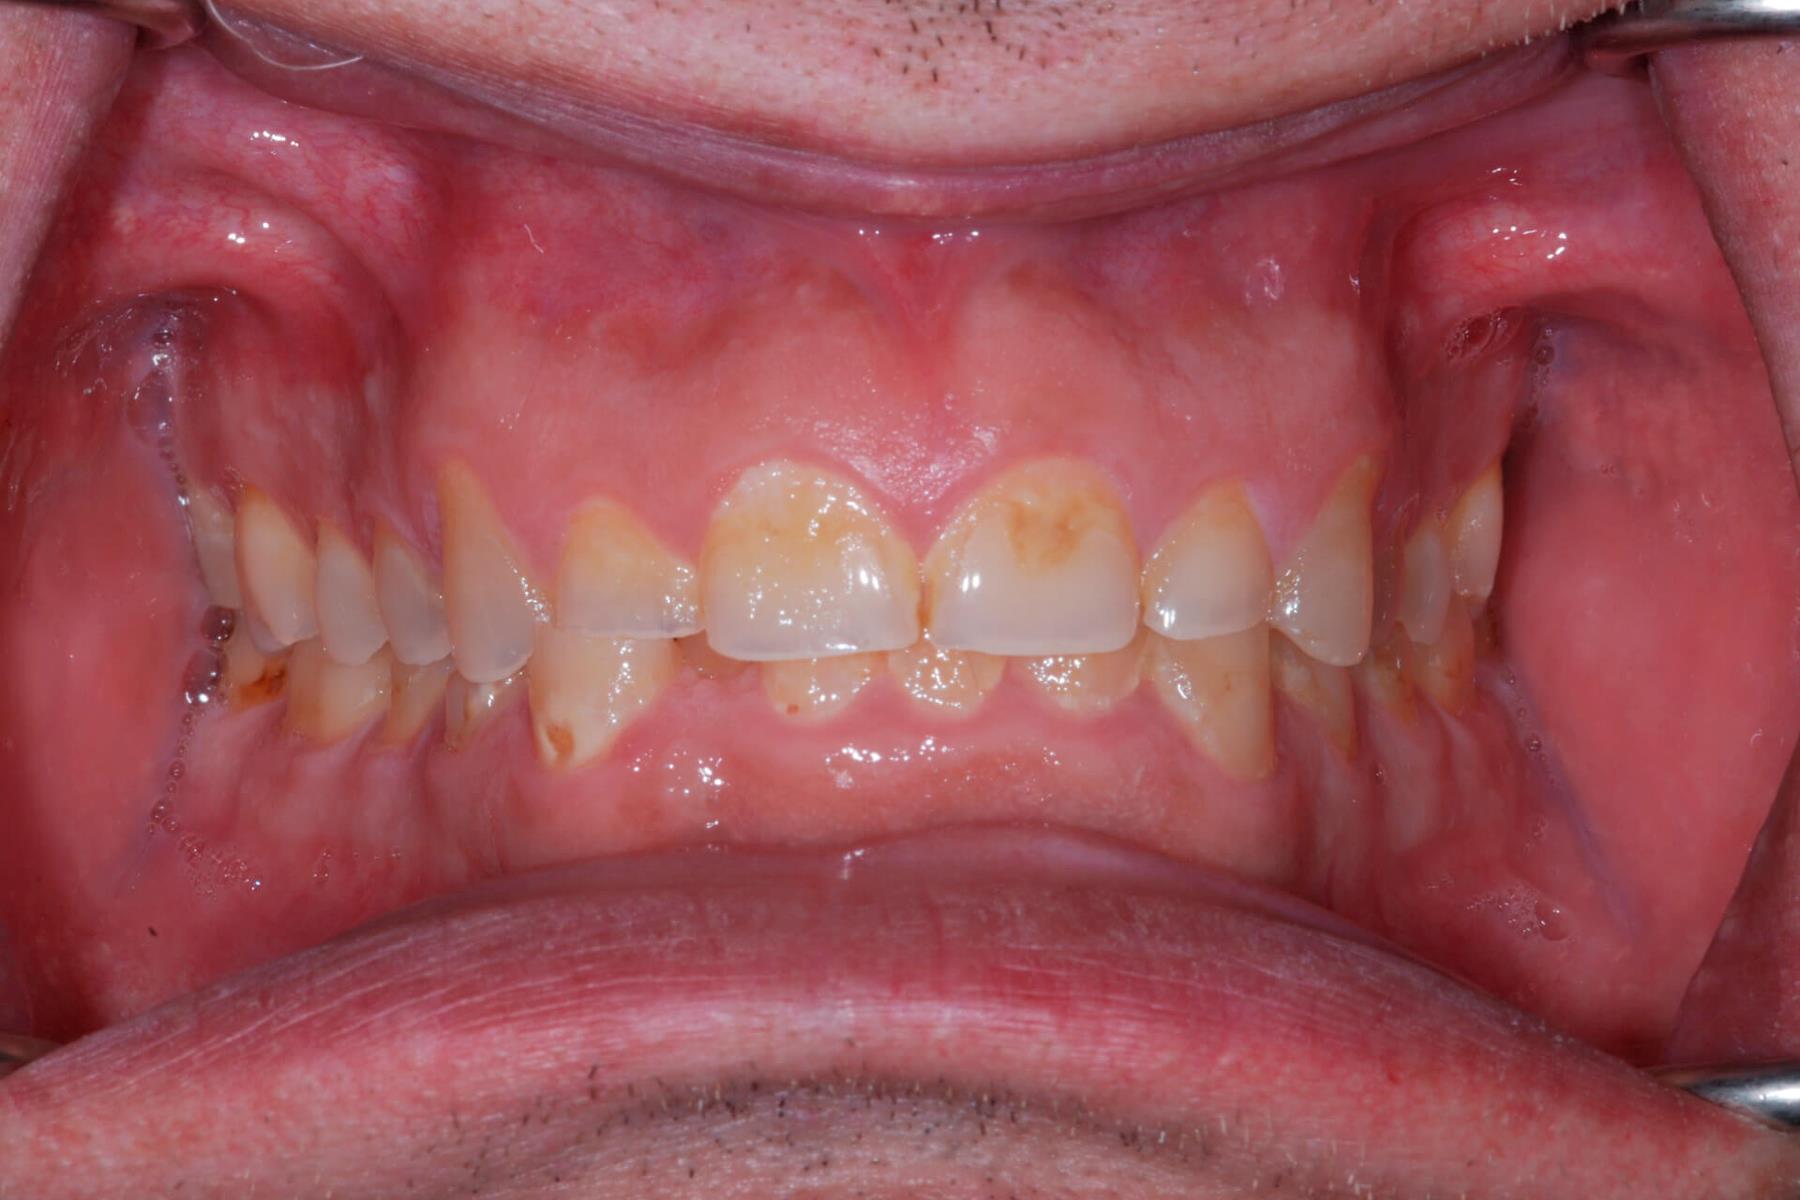 Tandlæge - Syreskadede tænder